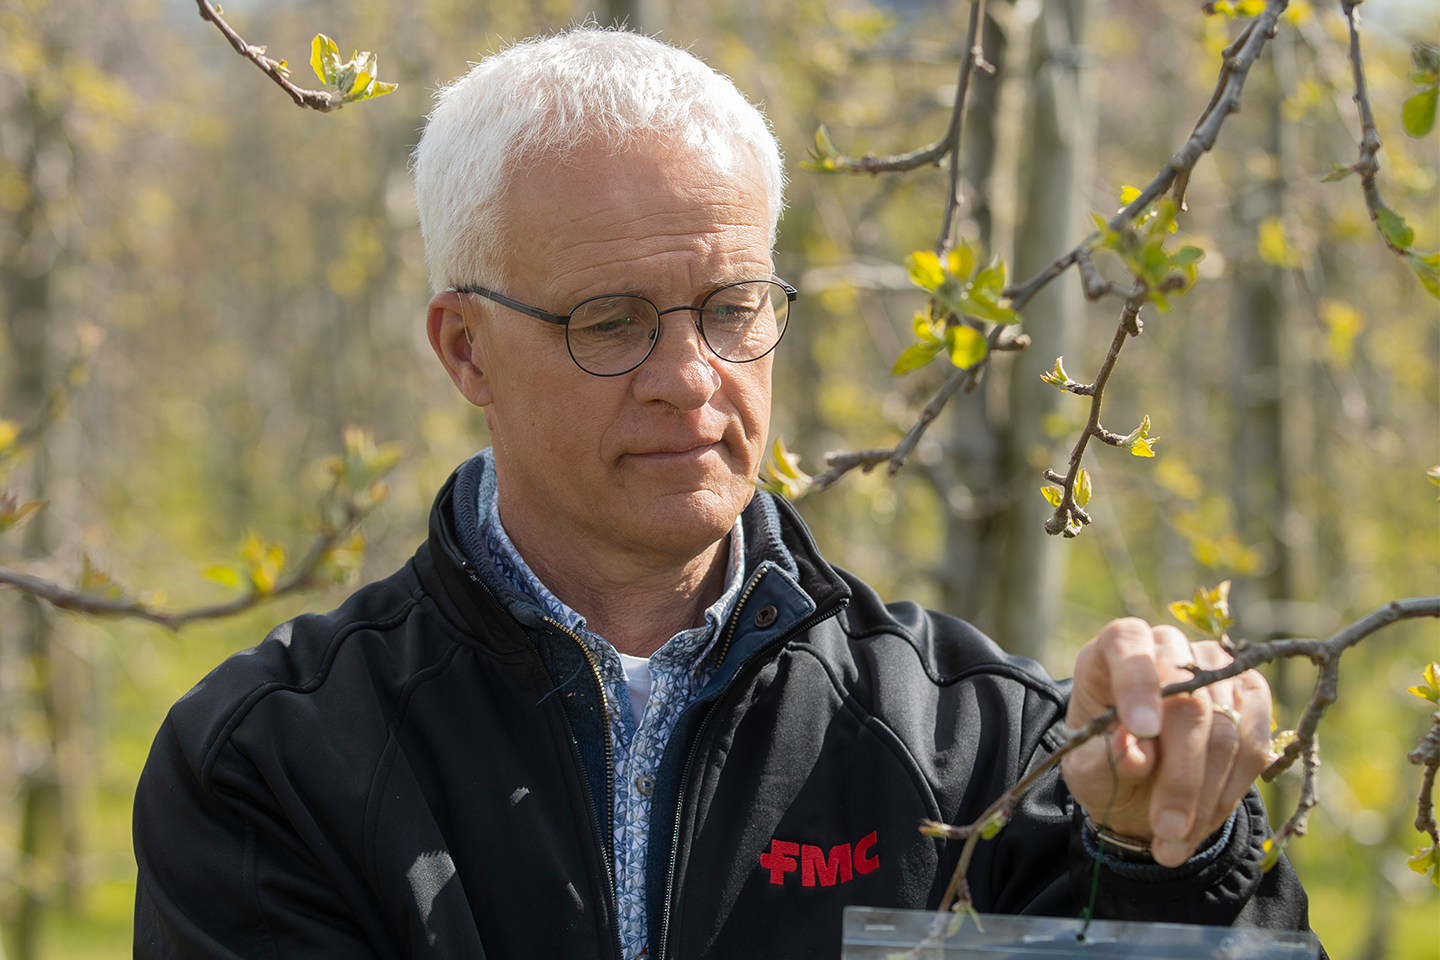 Nico Harteveld Technisch adviseur bij FMC in boomgaard